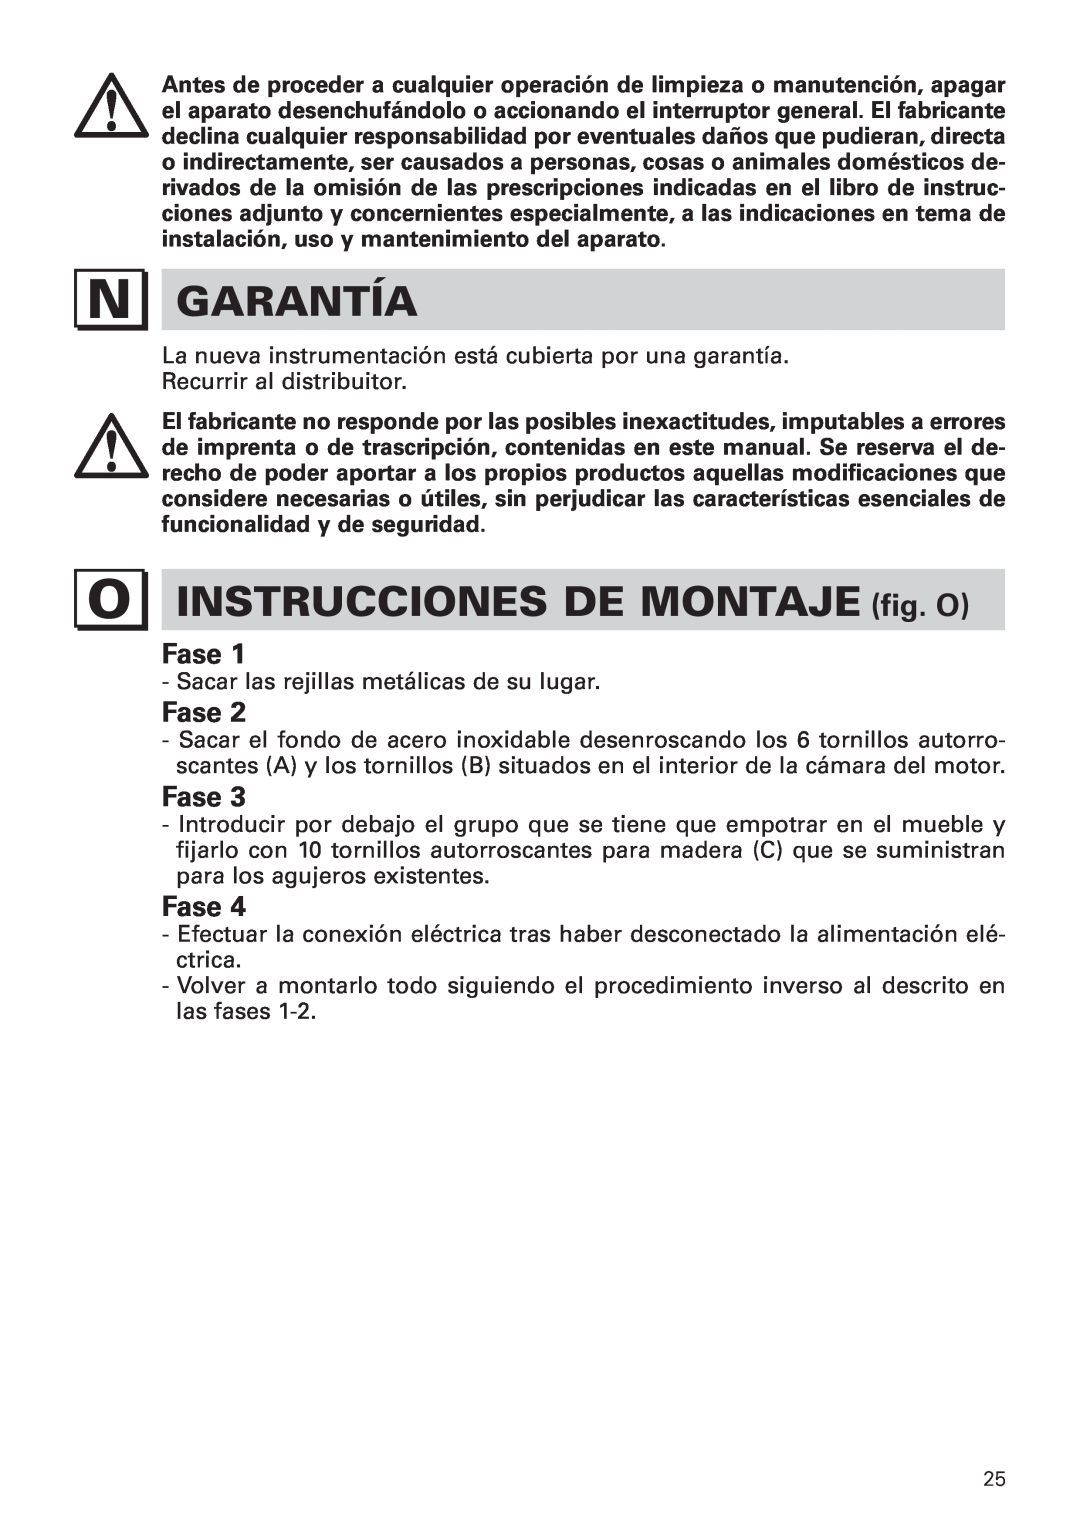 Bertazzoni KIN 36 PRO X manual Garantía, INSTRUCCIONES DE MONTAJE fig. O, Fase 